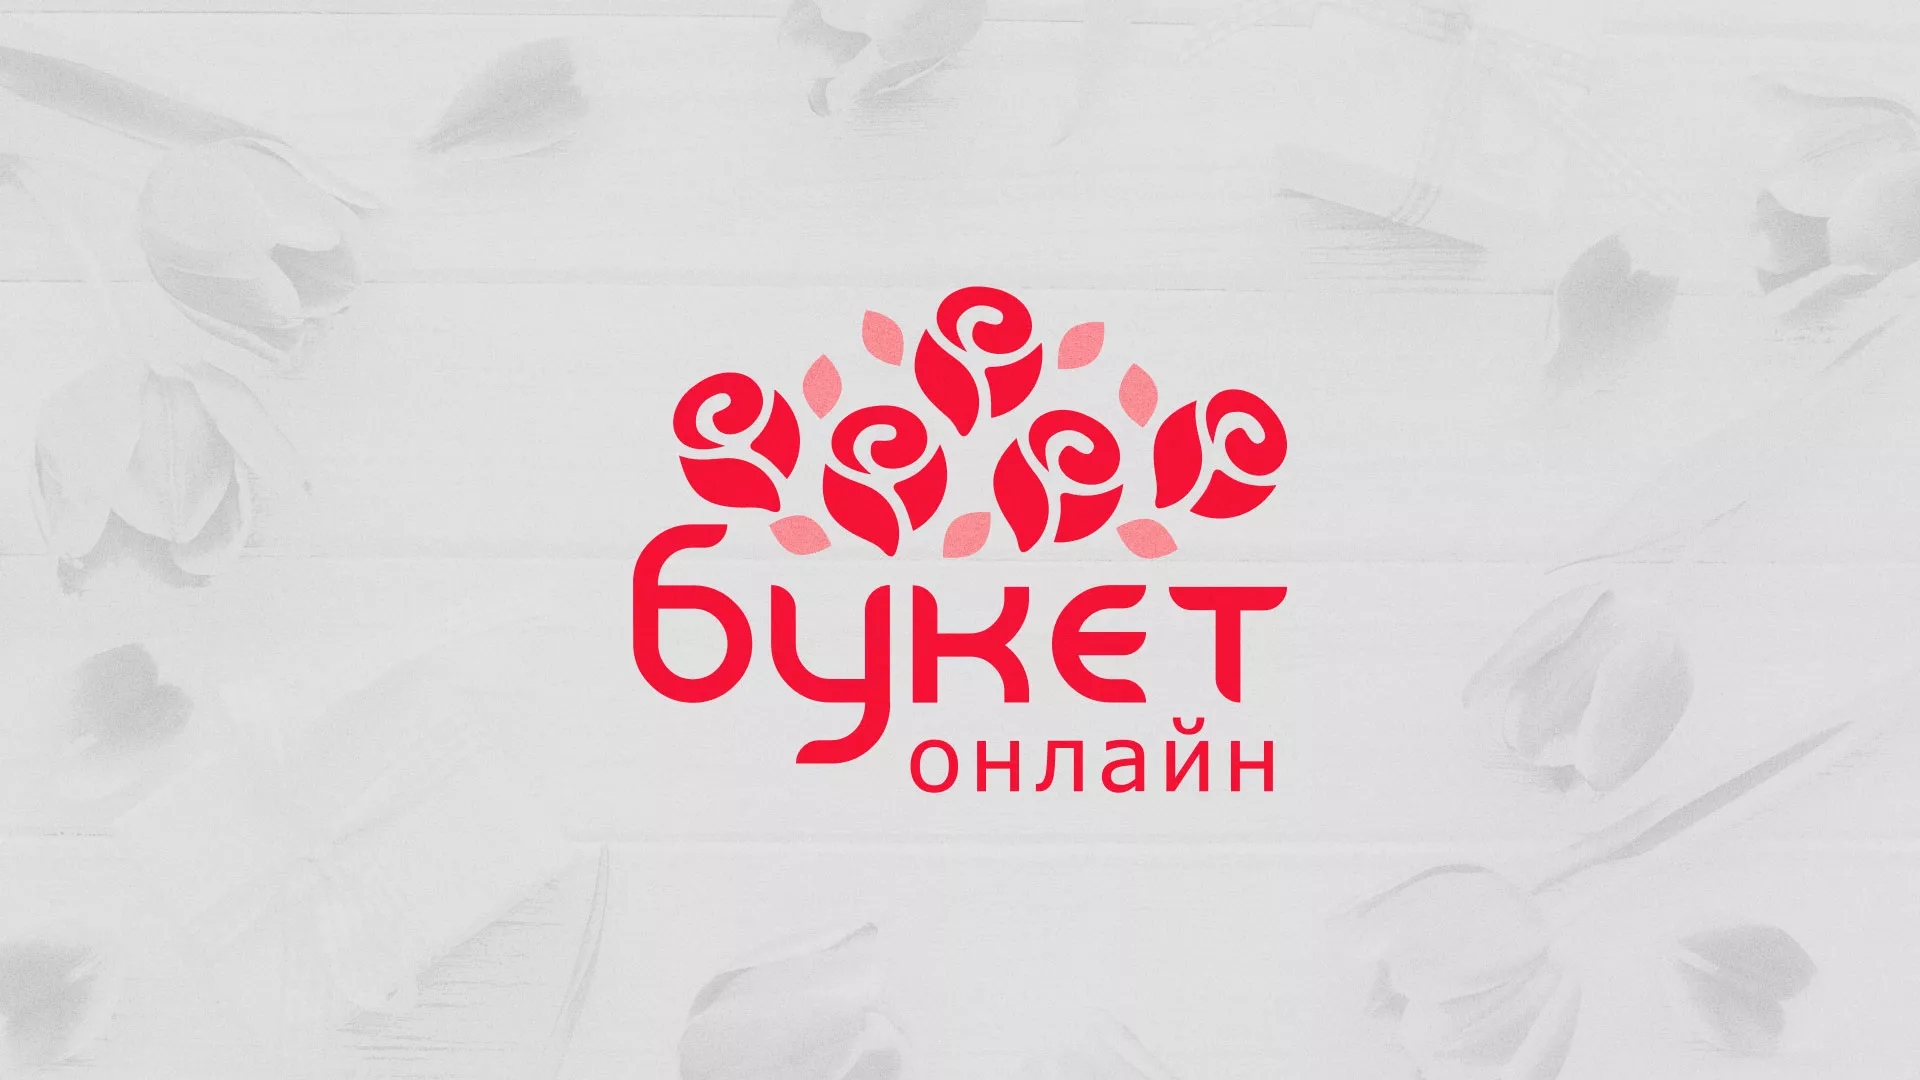 Создание интернет-магазина «Букет-онлайн» по цветам в Дно